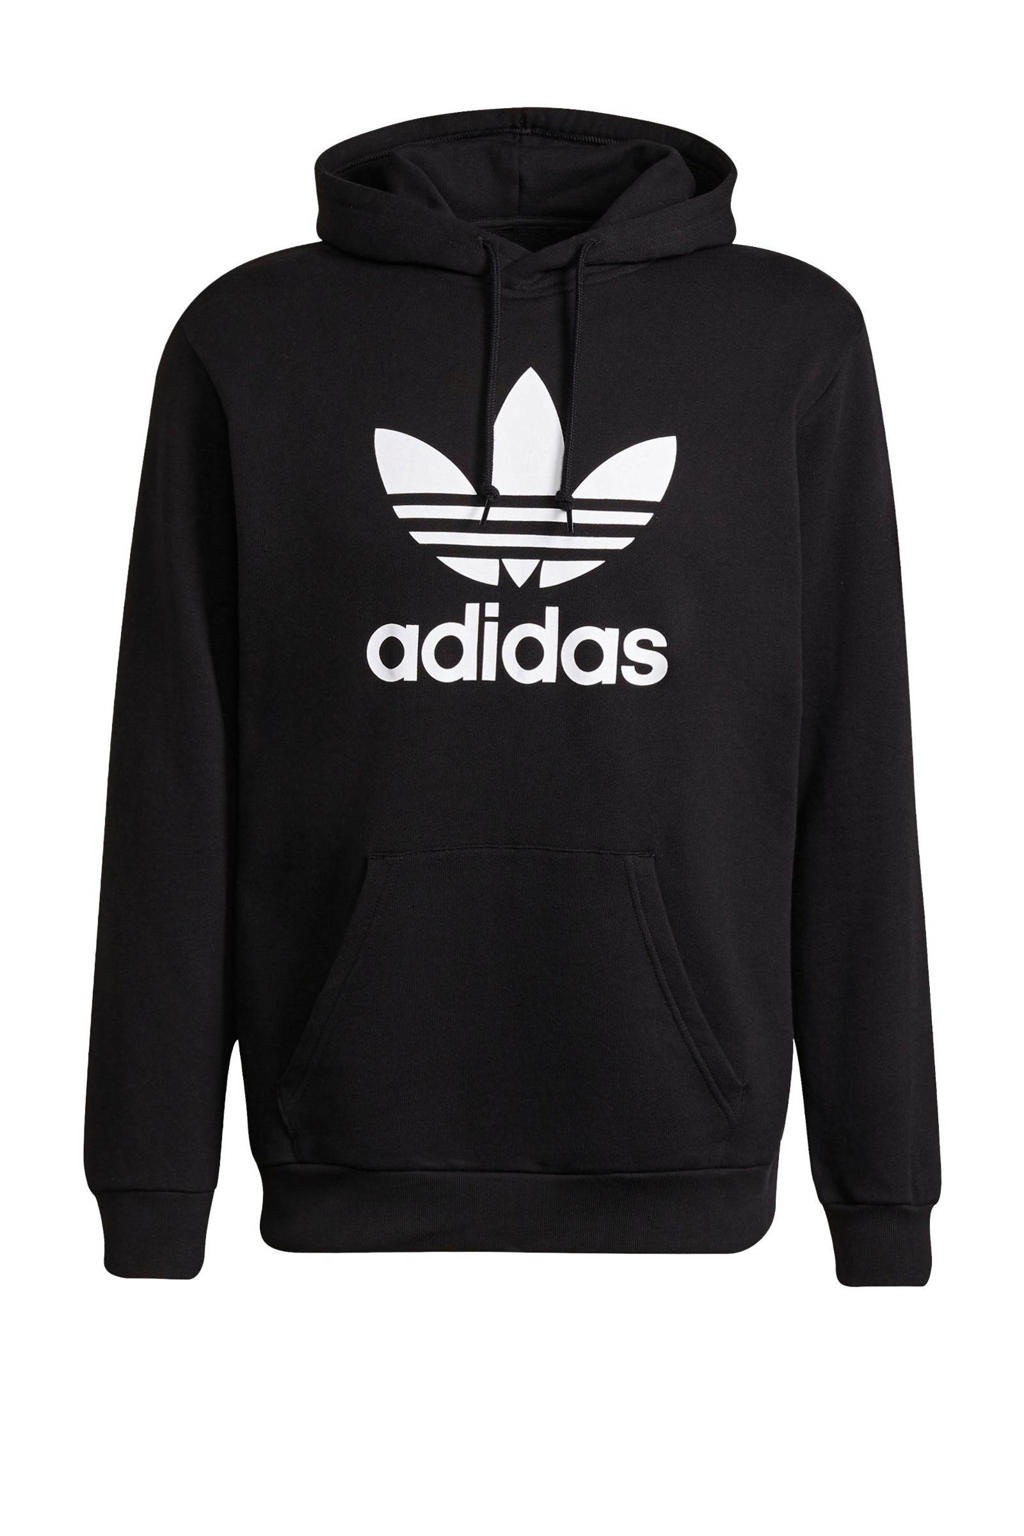 Zwart en witte heren adidas Originals Adicolor hoodie van katoen met logo dessin, lange mouwen, capuchon en geribde boorden